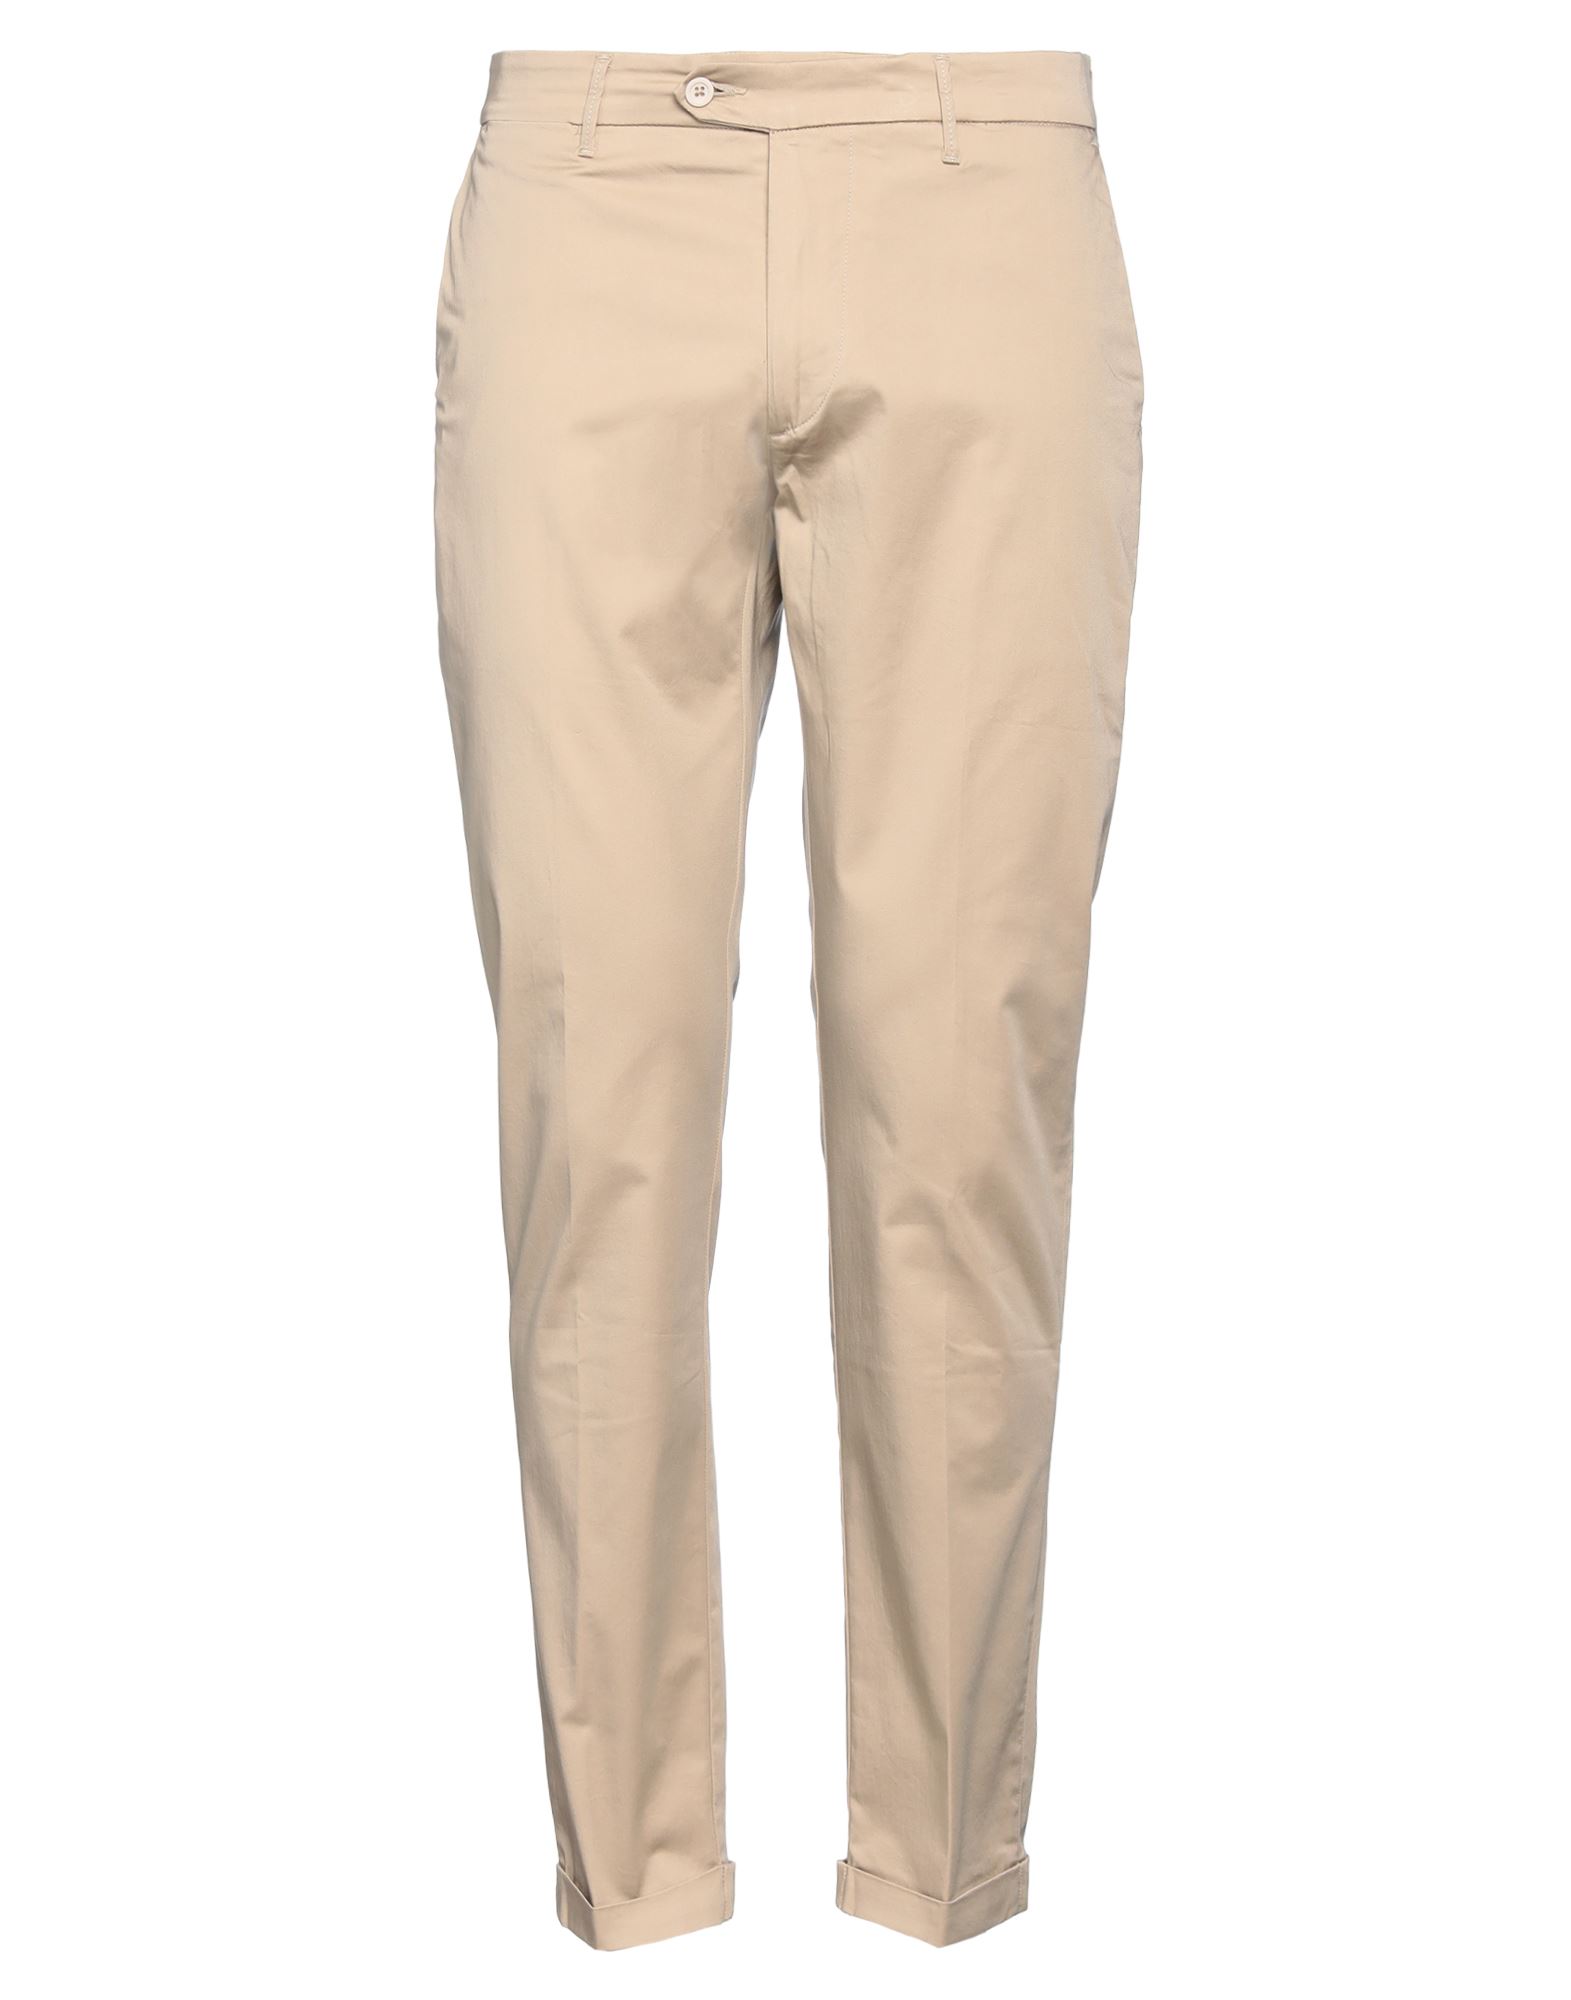 0/zero Construction Man Pants Beige Size 35 Cotton, Elastane